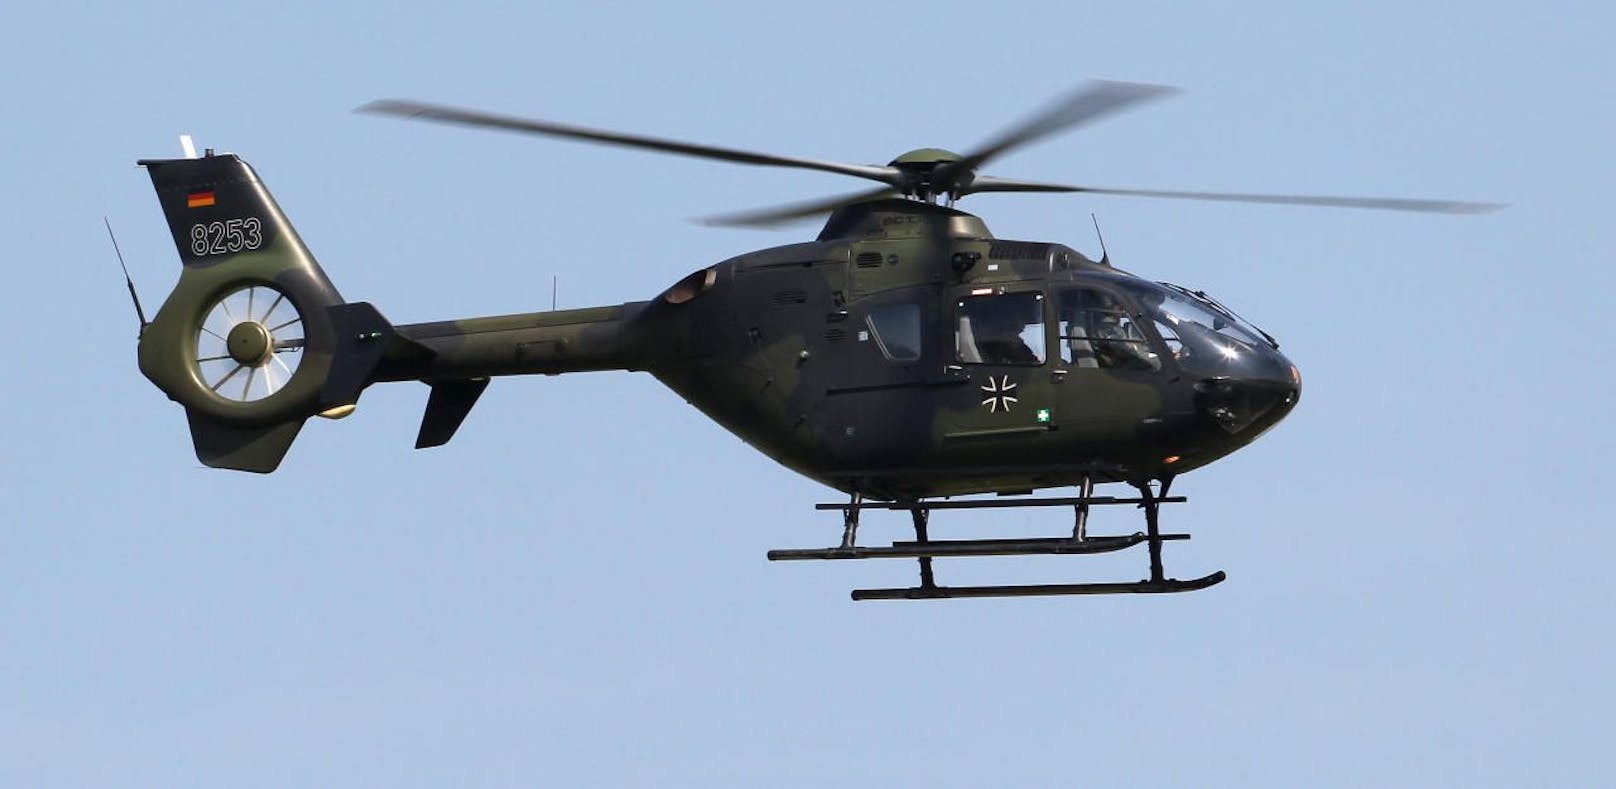 (Symbolbild) Ein Hubschrauber vom Typ EC-135 der deutschen Bundeswehr, derselbe Typ wie der abgestürzte Hubschrauber.